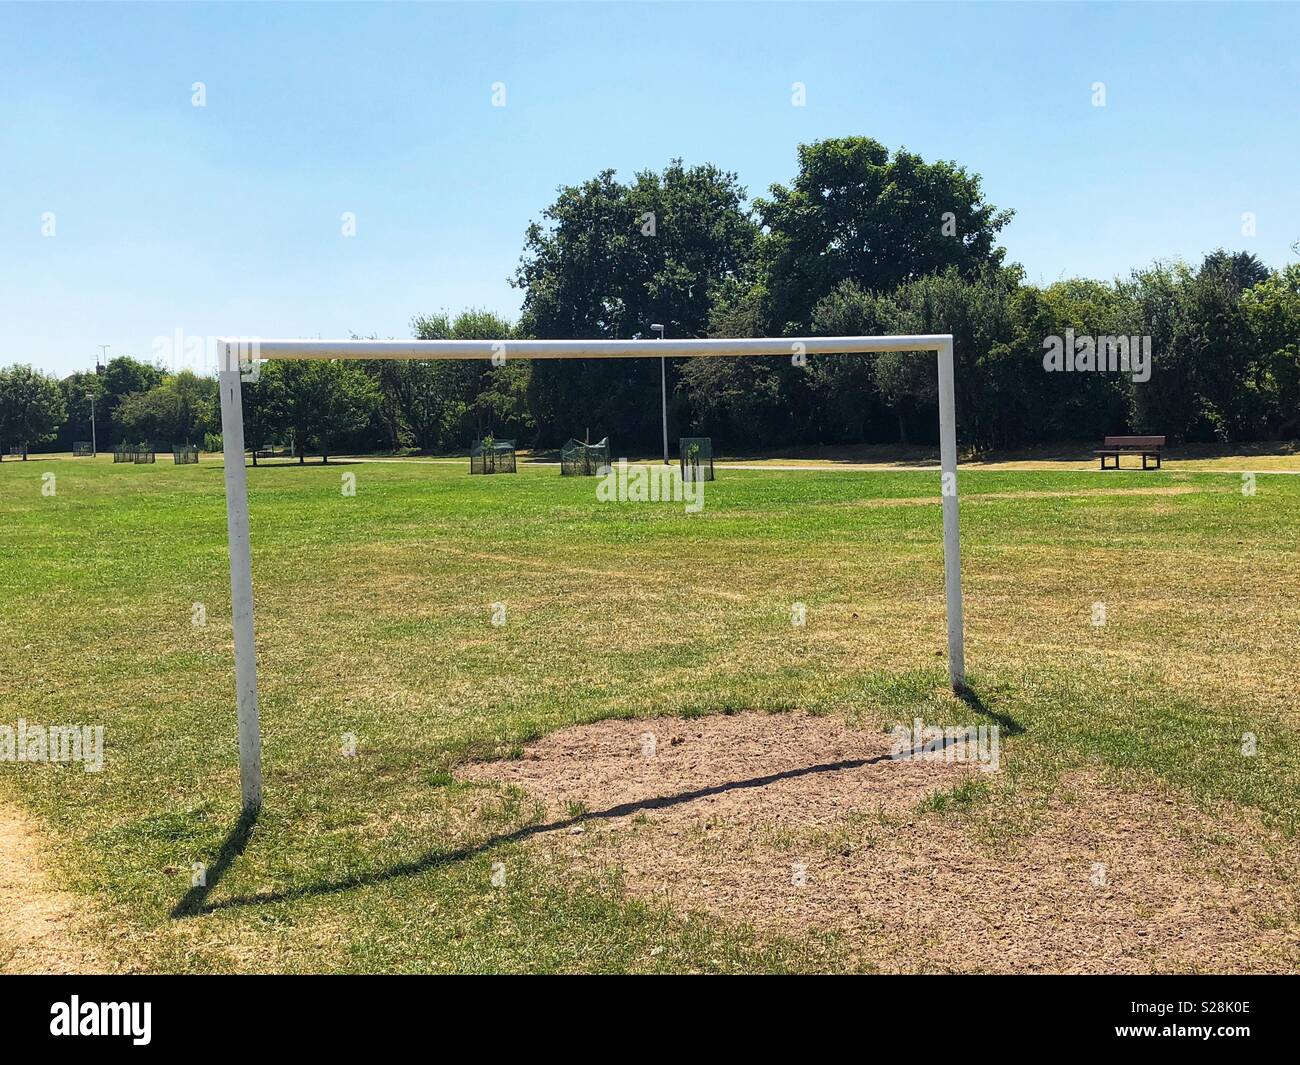 Buts de football blanc sur un terrain de football dans un parc public, Greasby, Wirral, Angleterre Banque D'Images